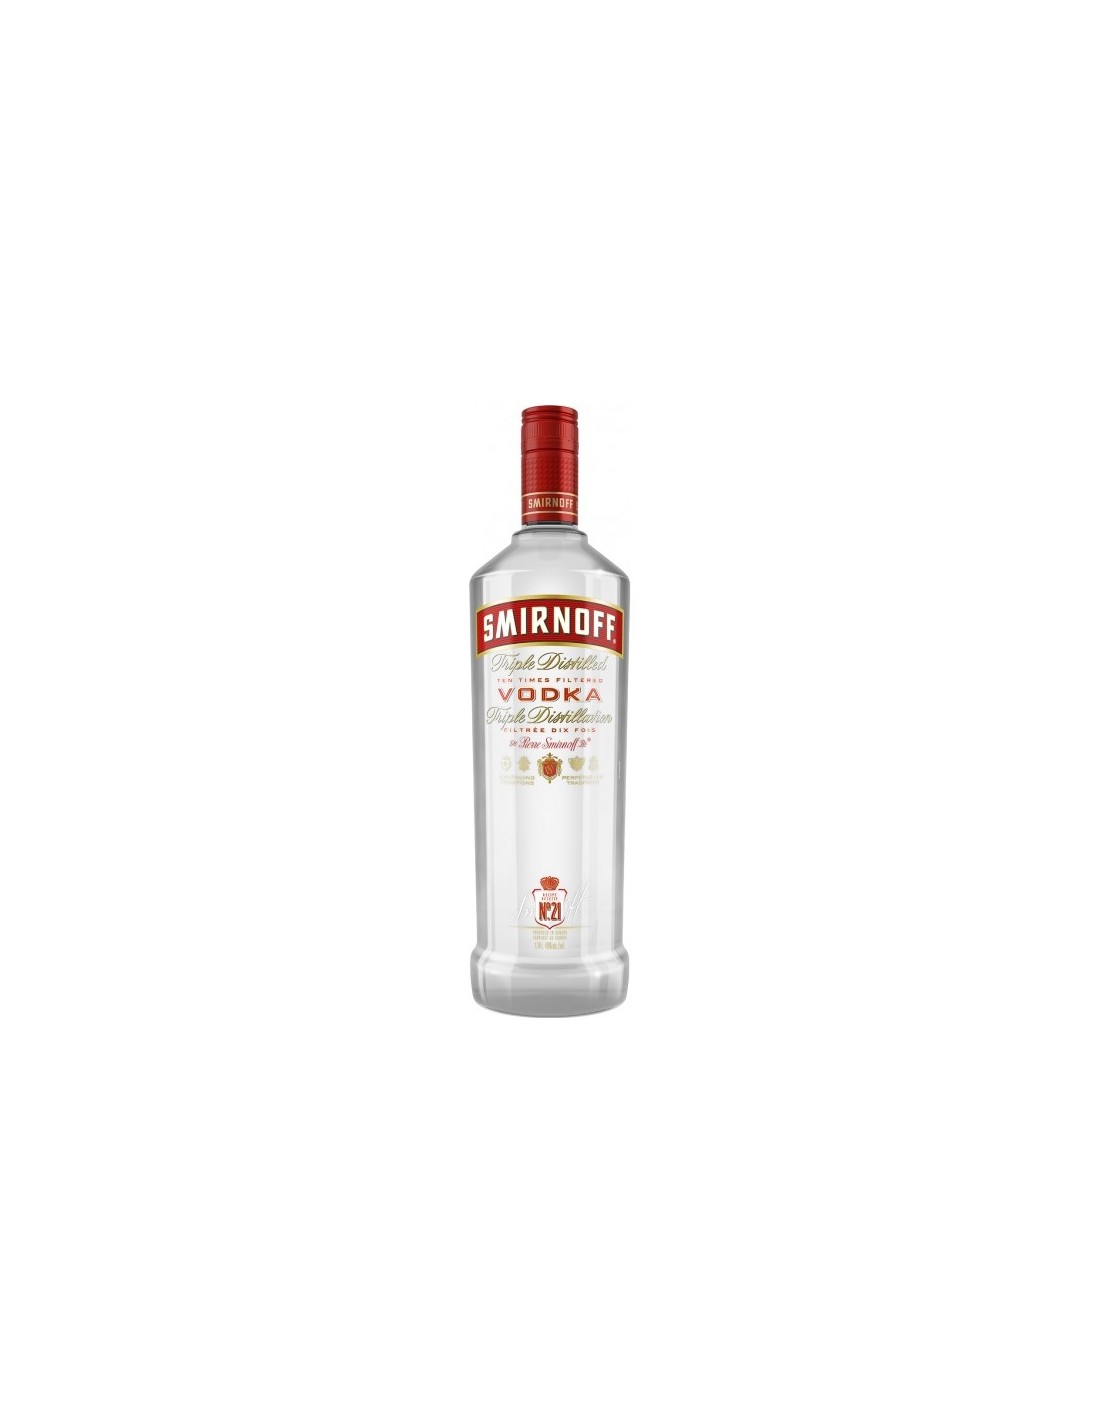 Vodca Smirnoff Red, 0.7L, 40% alc., Rusia alcooldiscount.ro